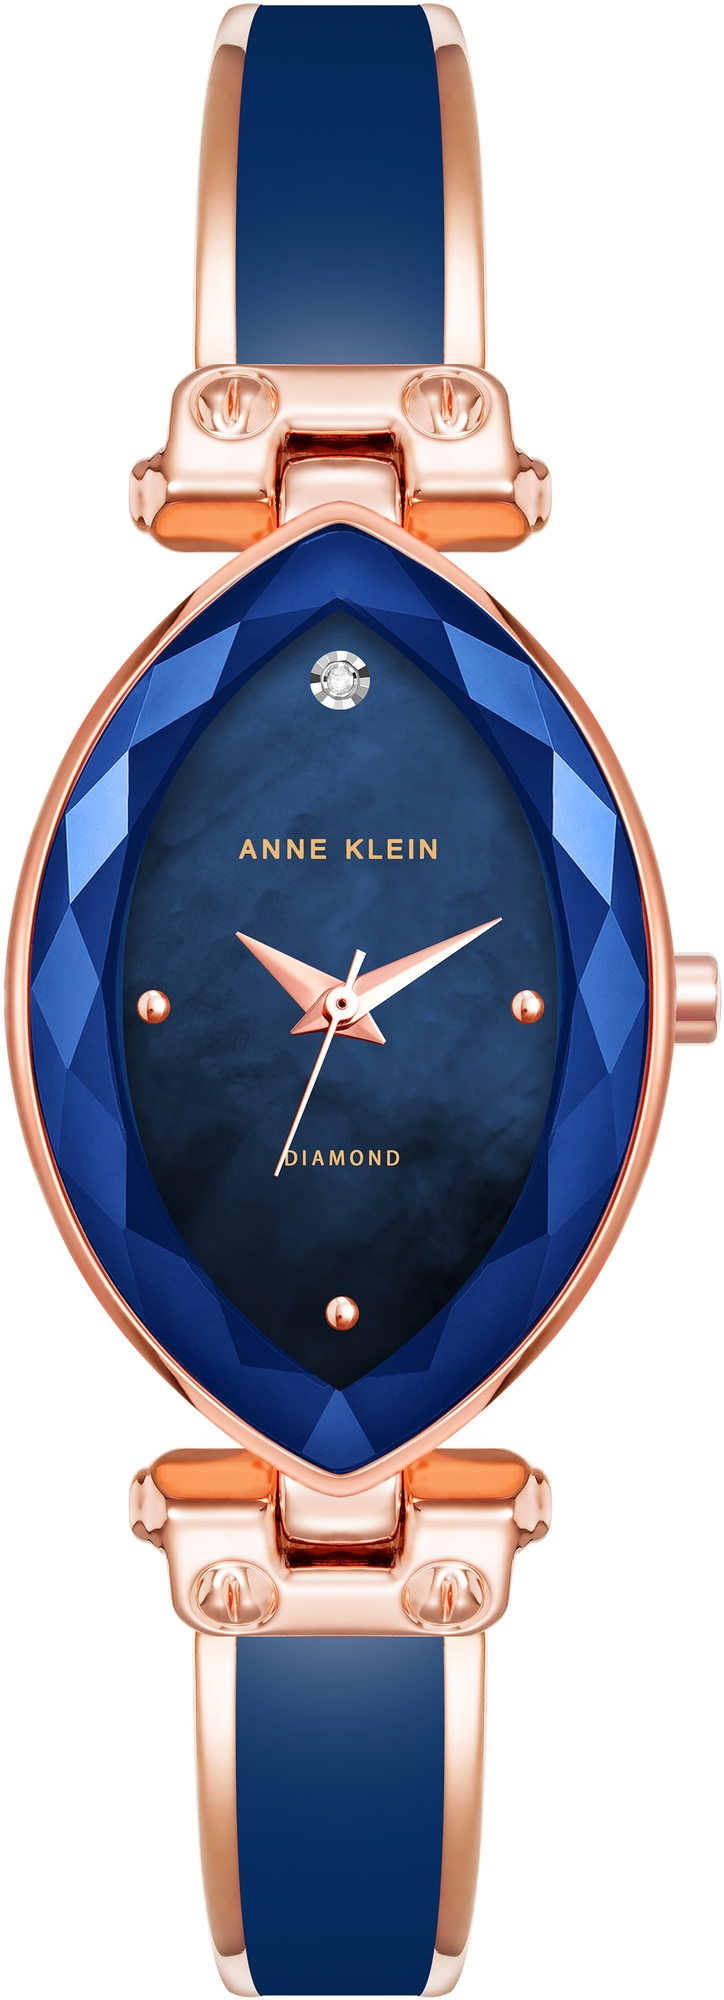 Наручные часы Anne Klein 4018NVRG наручные часы anne klein 3322wtrg